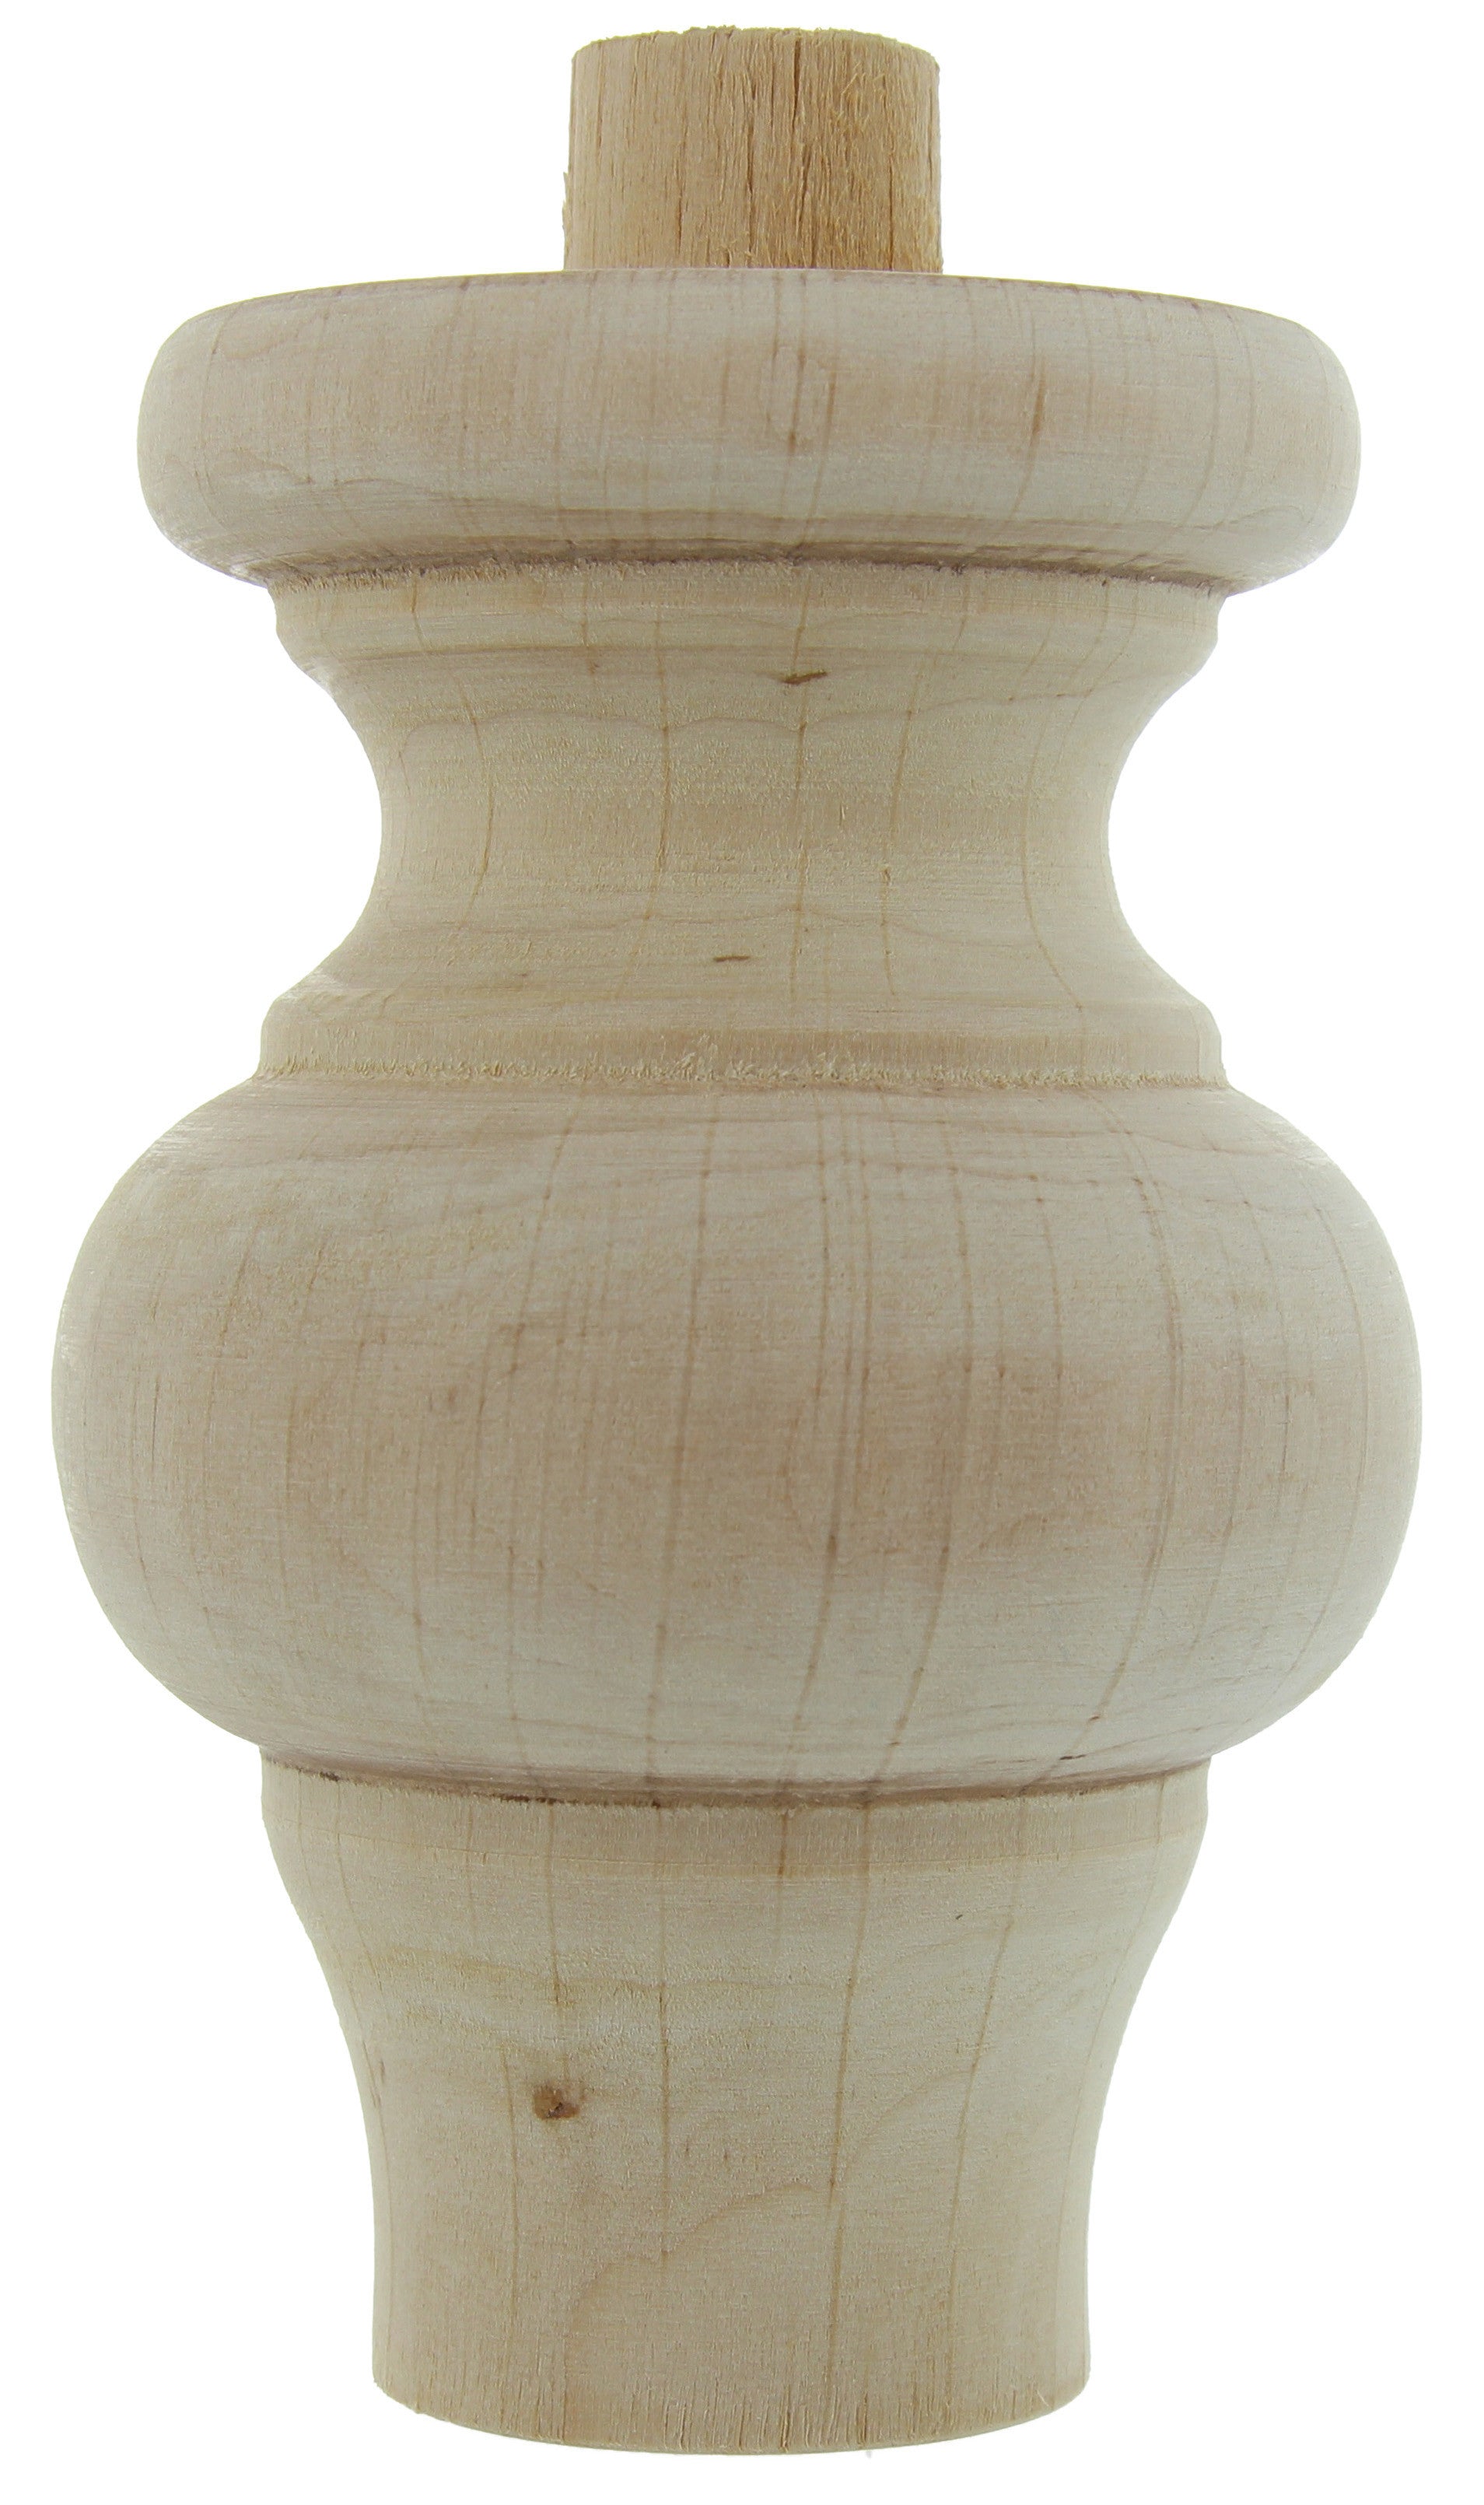 Piede legno grezzo art.53009 mm.78x115